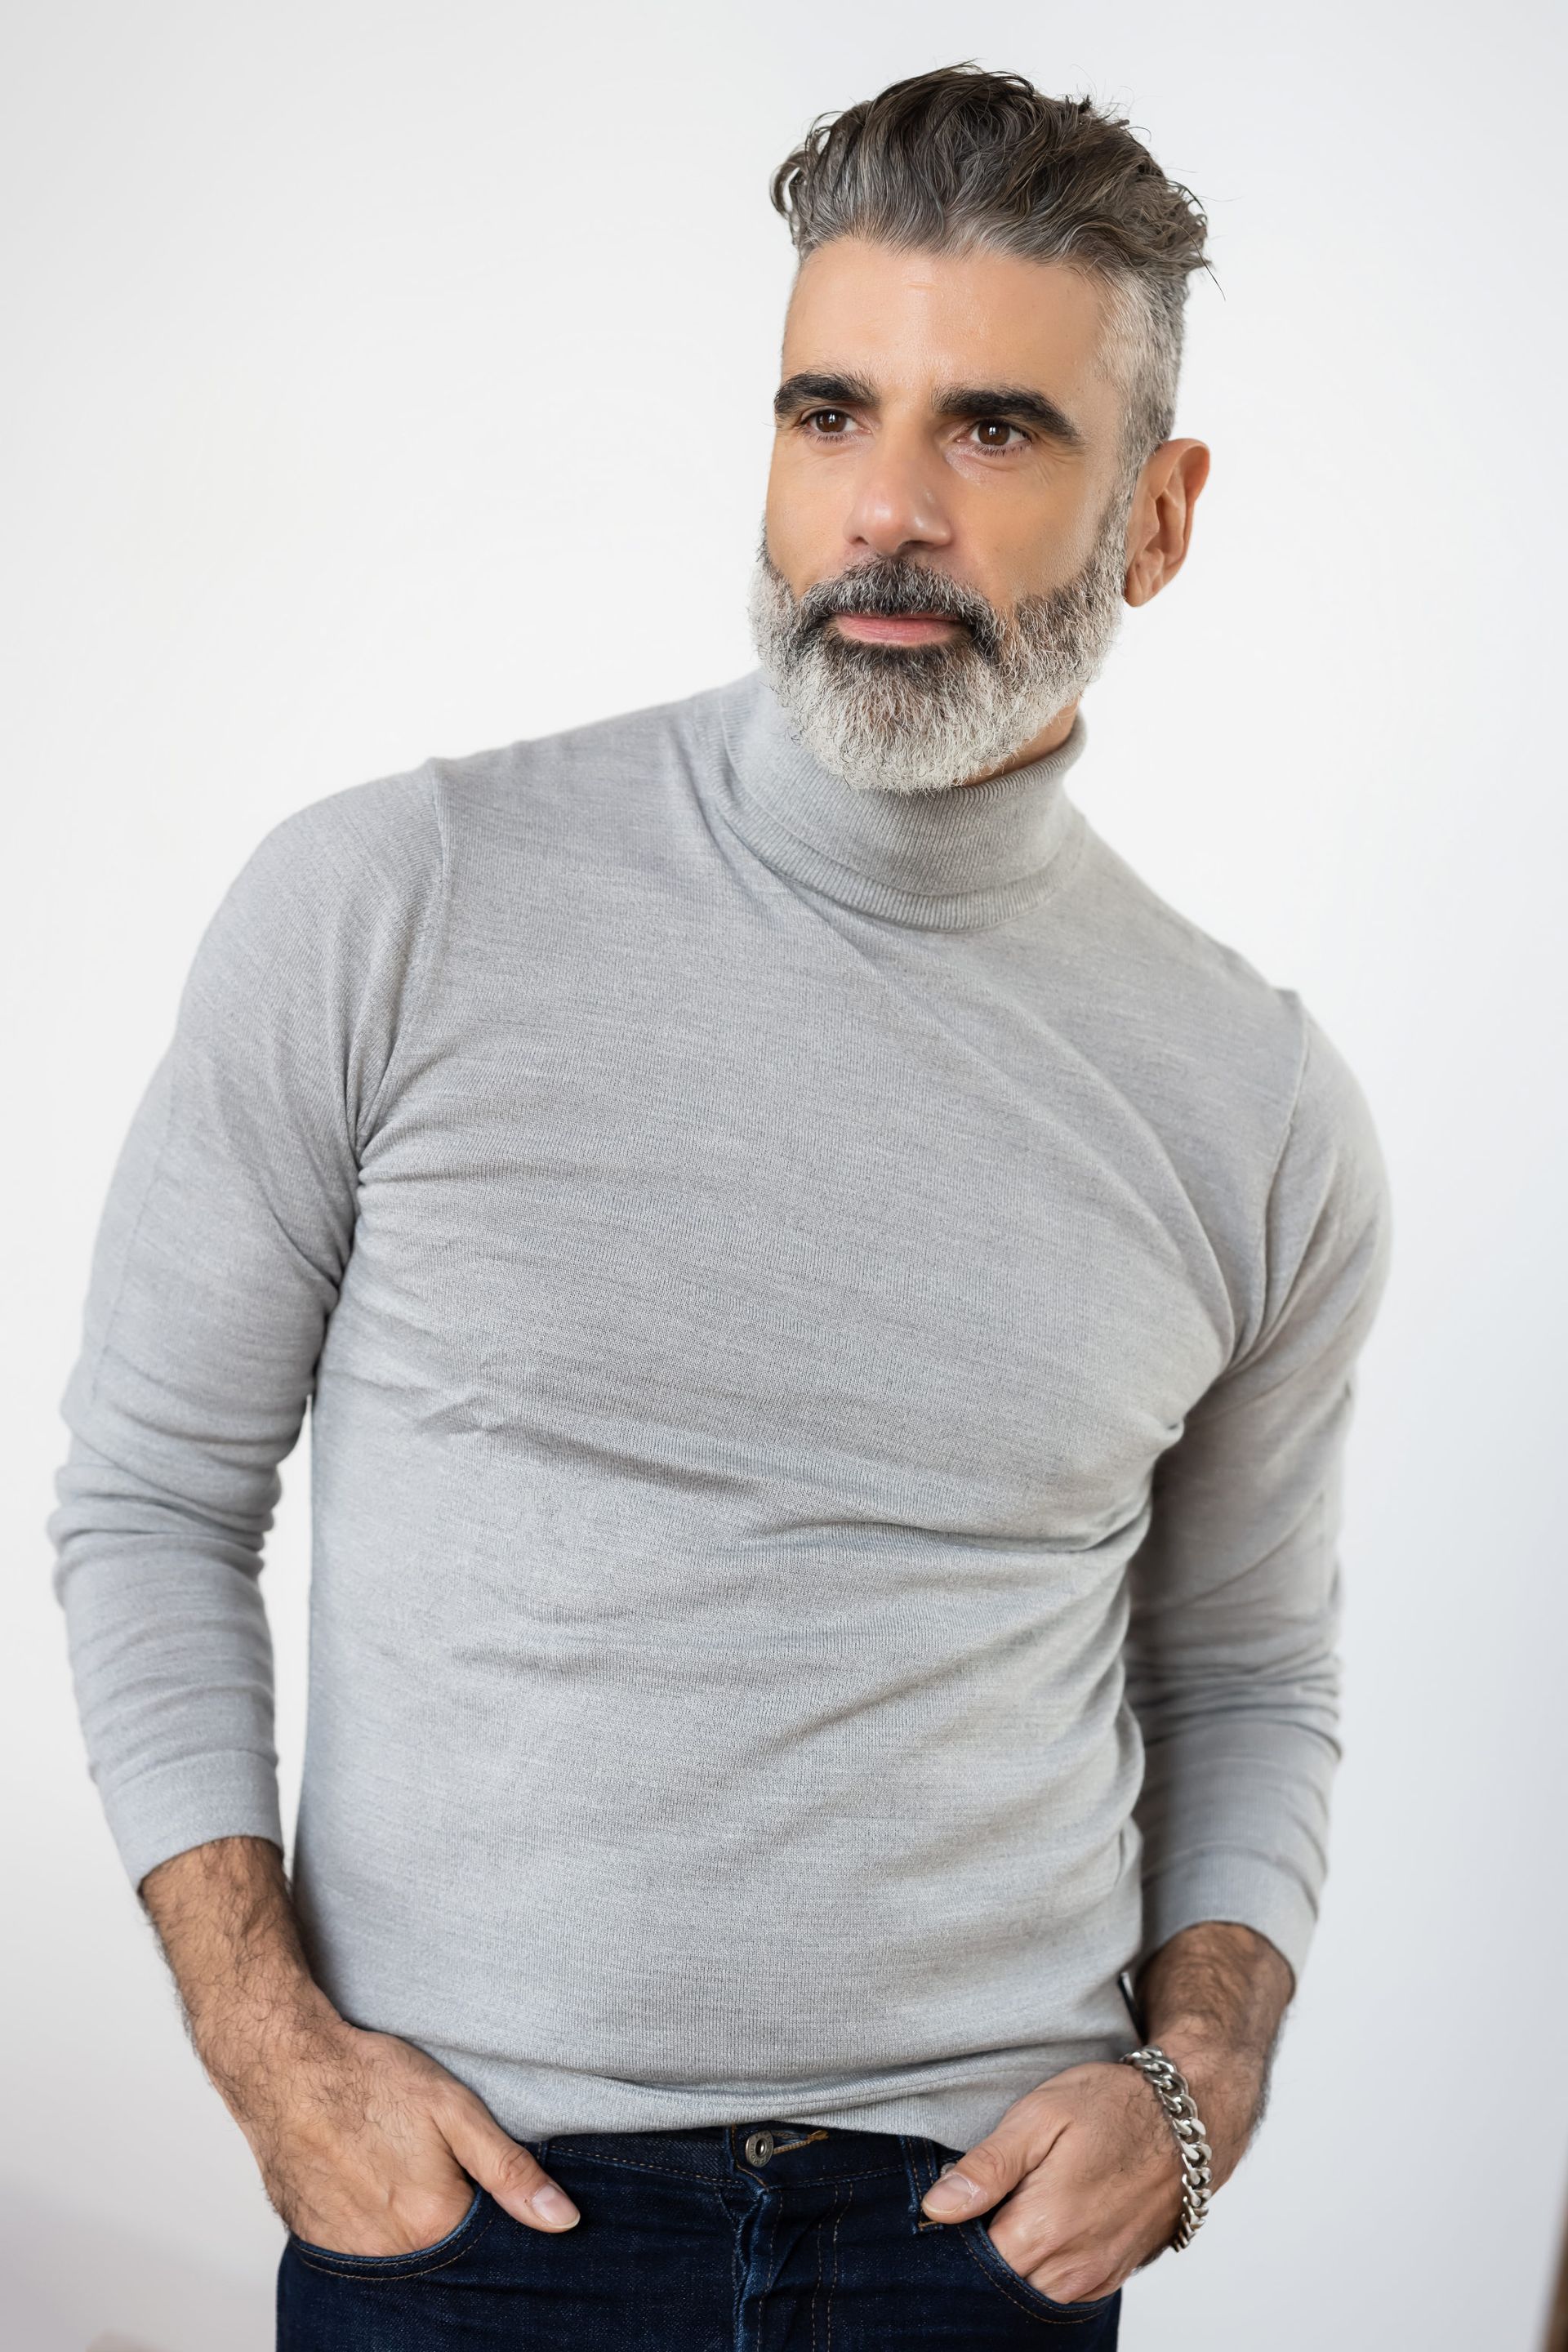 Headshot of stylish bearded gentleman wearing a sophisticated gray turtleneck